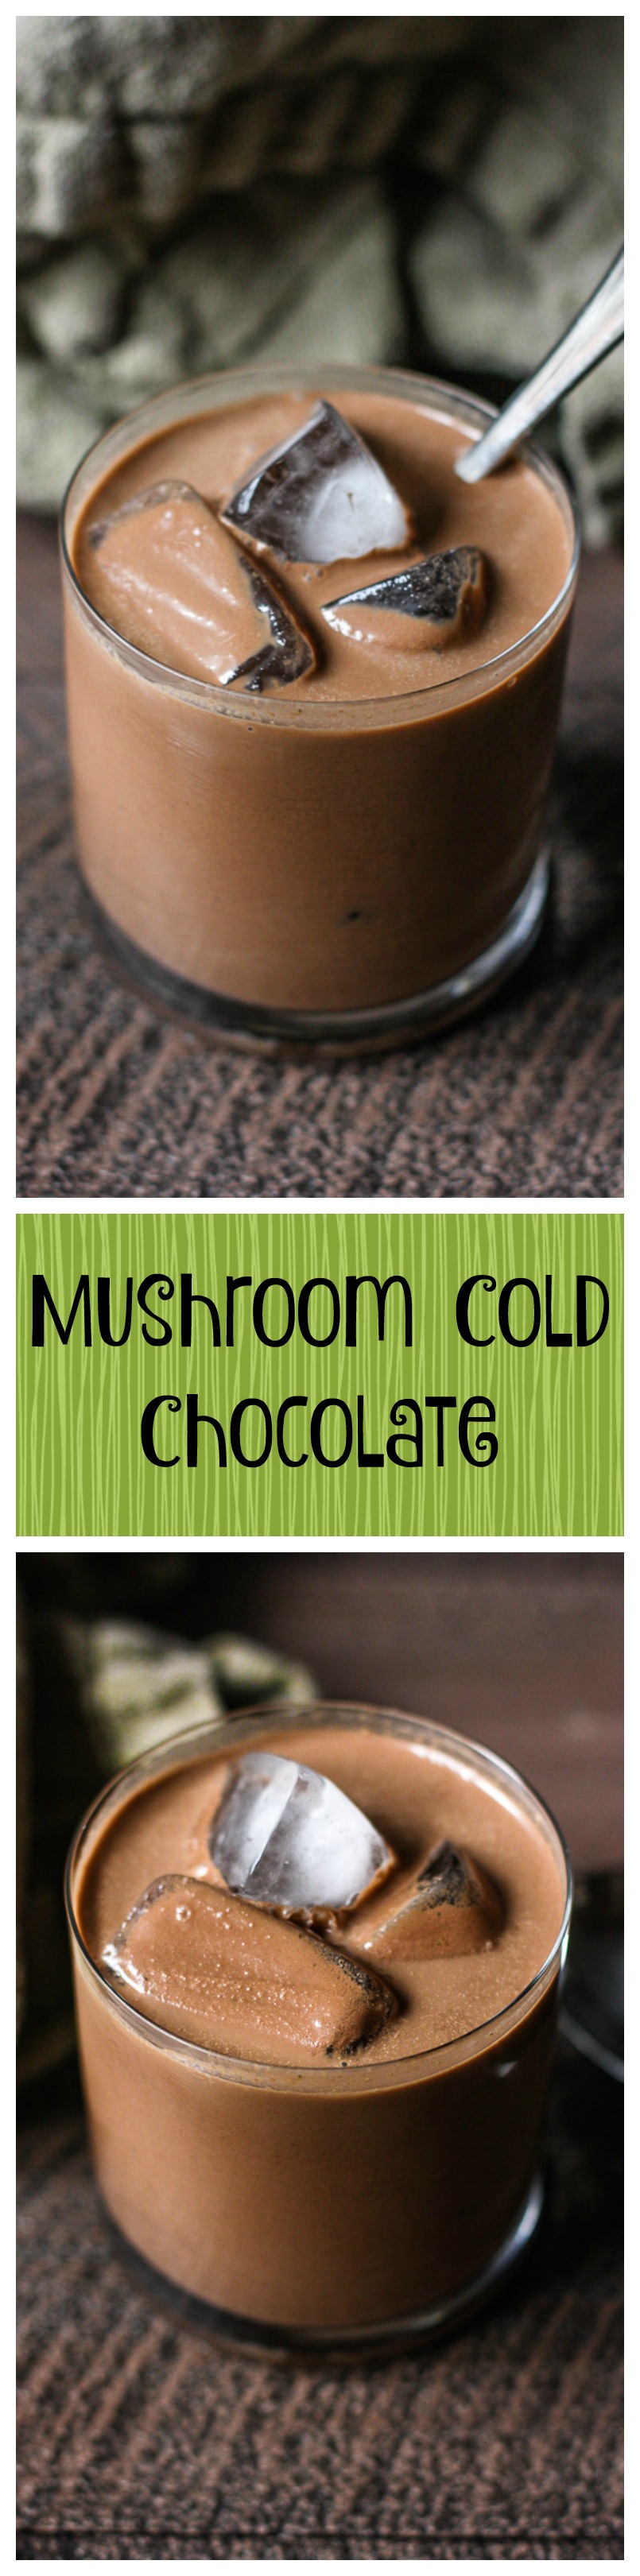 mushroom superfood iced chocolate